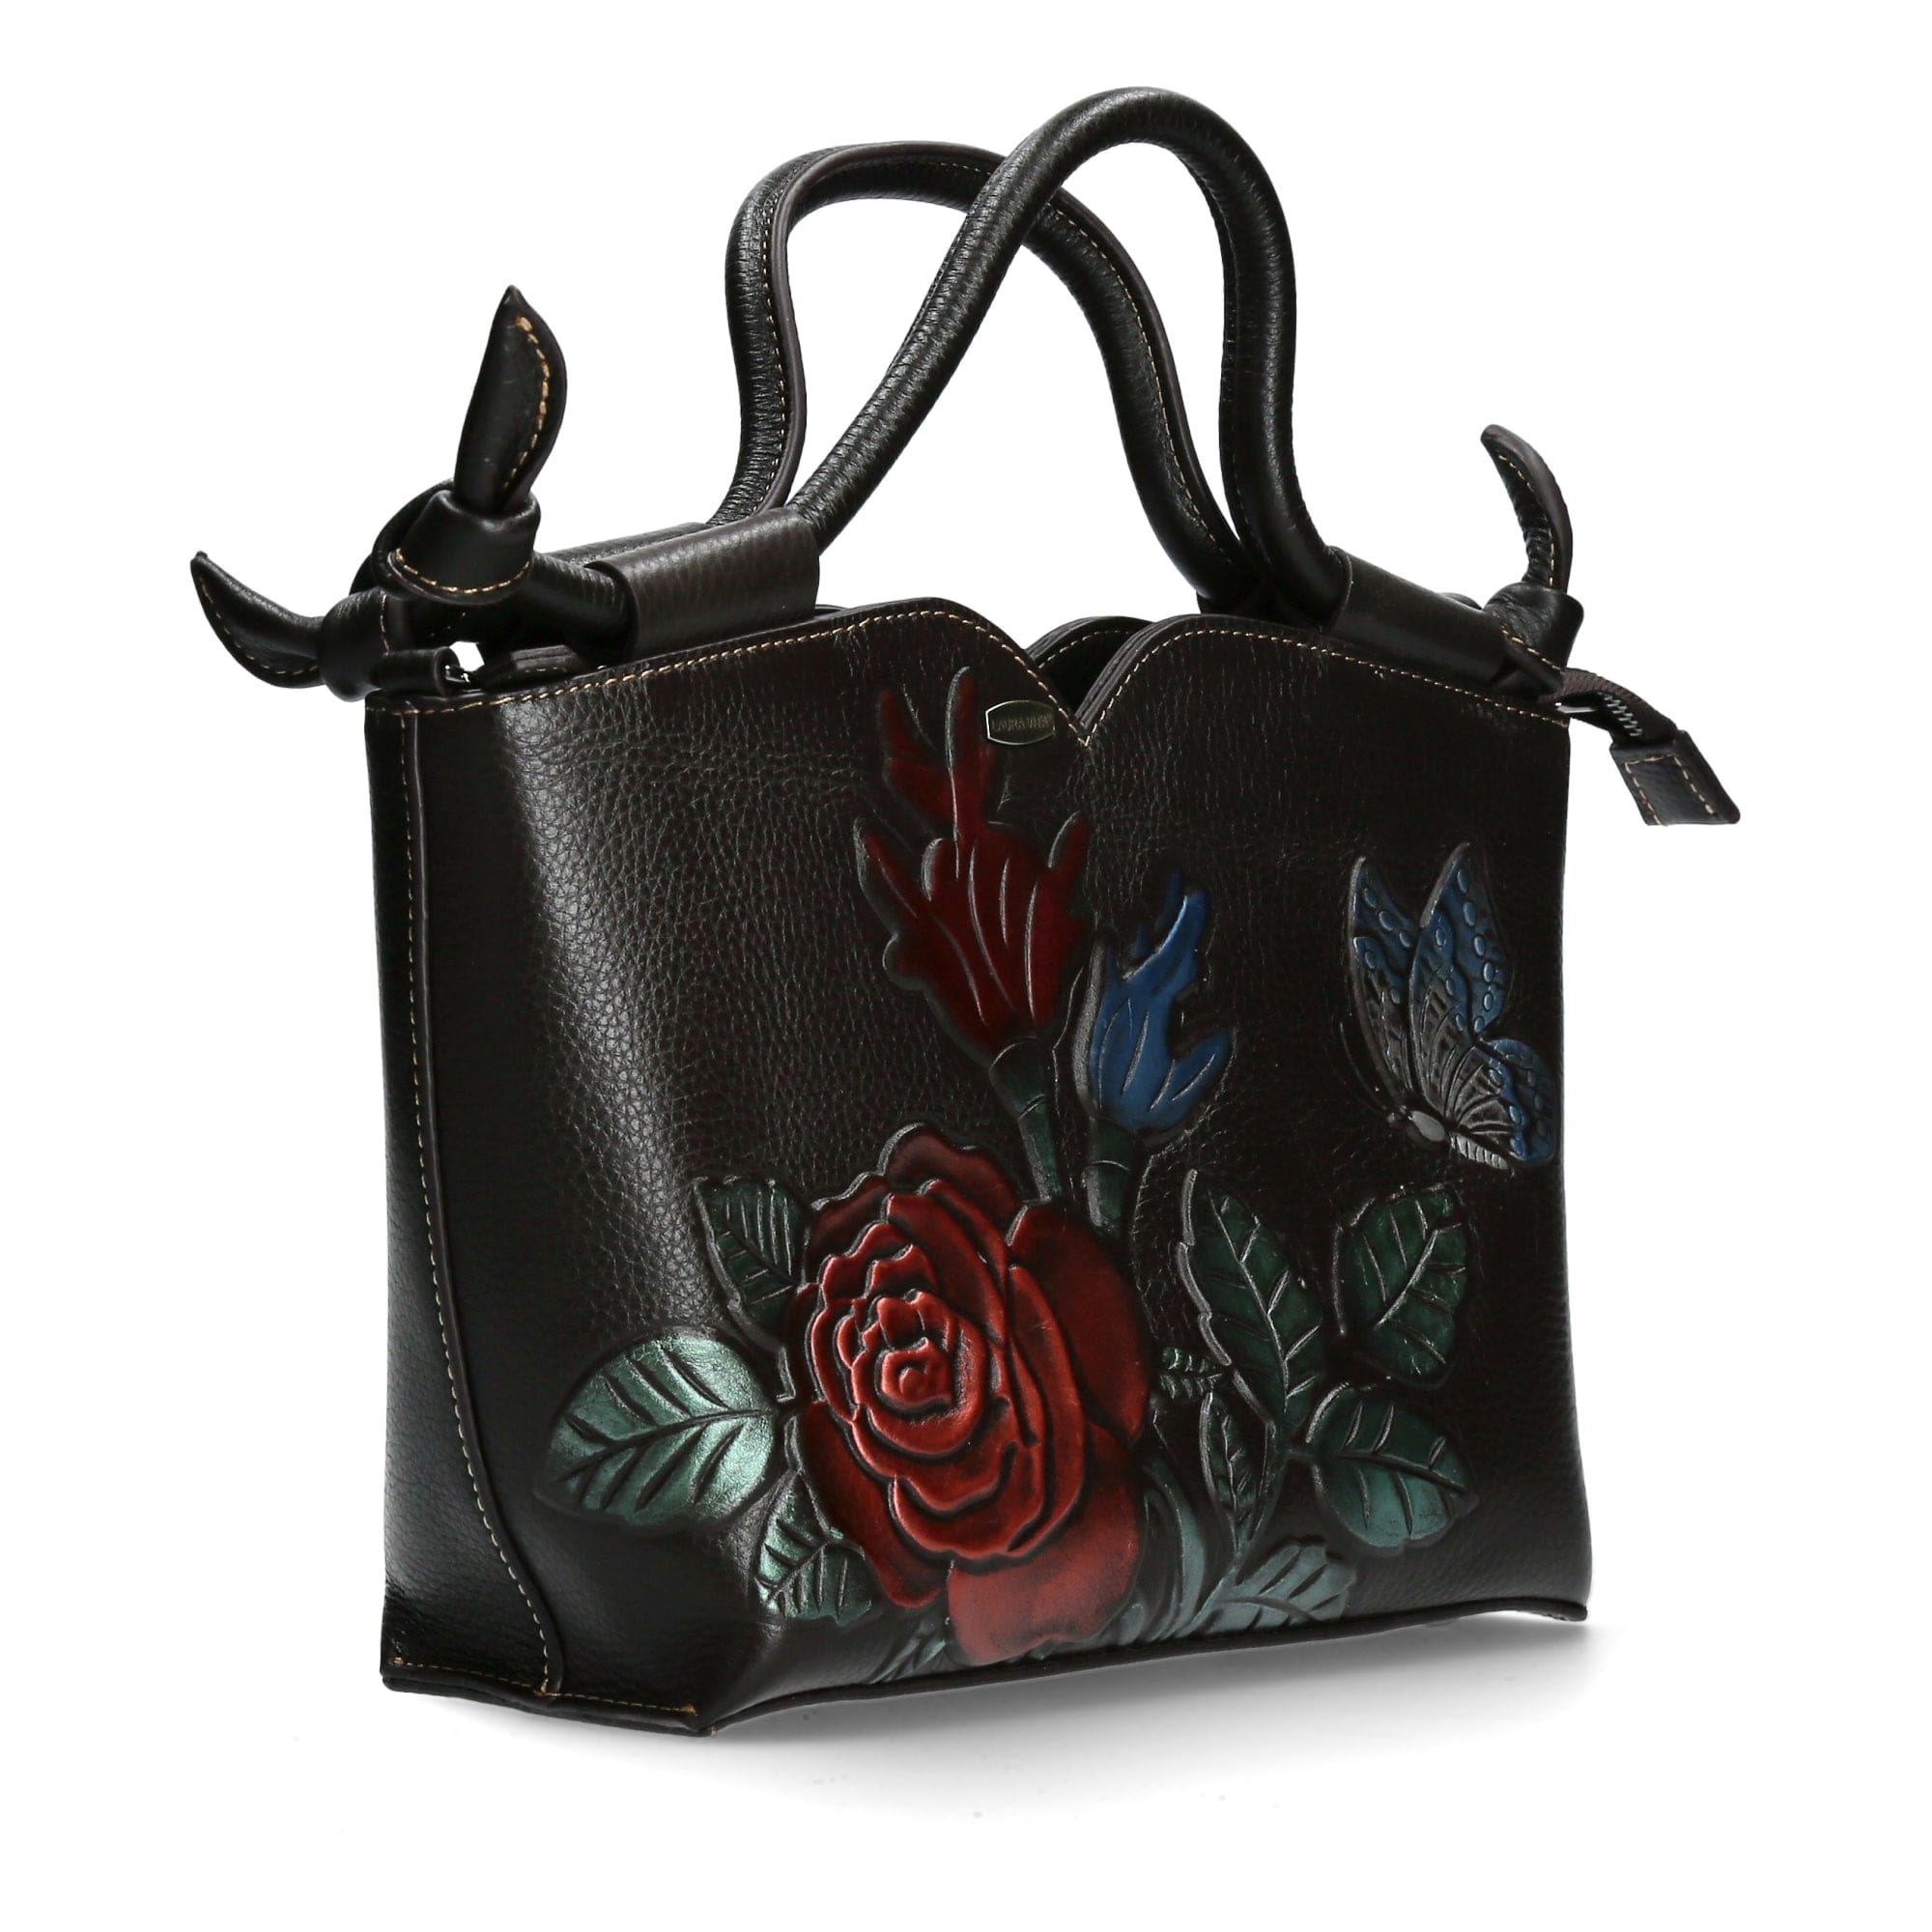 Bag Régina Exclusivité - Bag